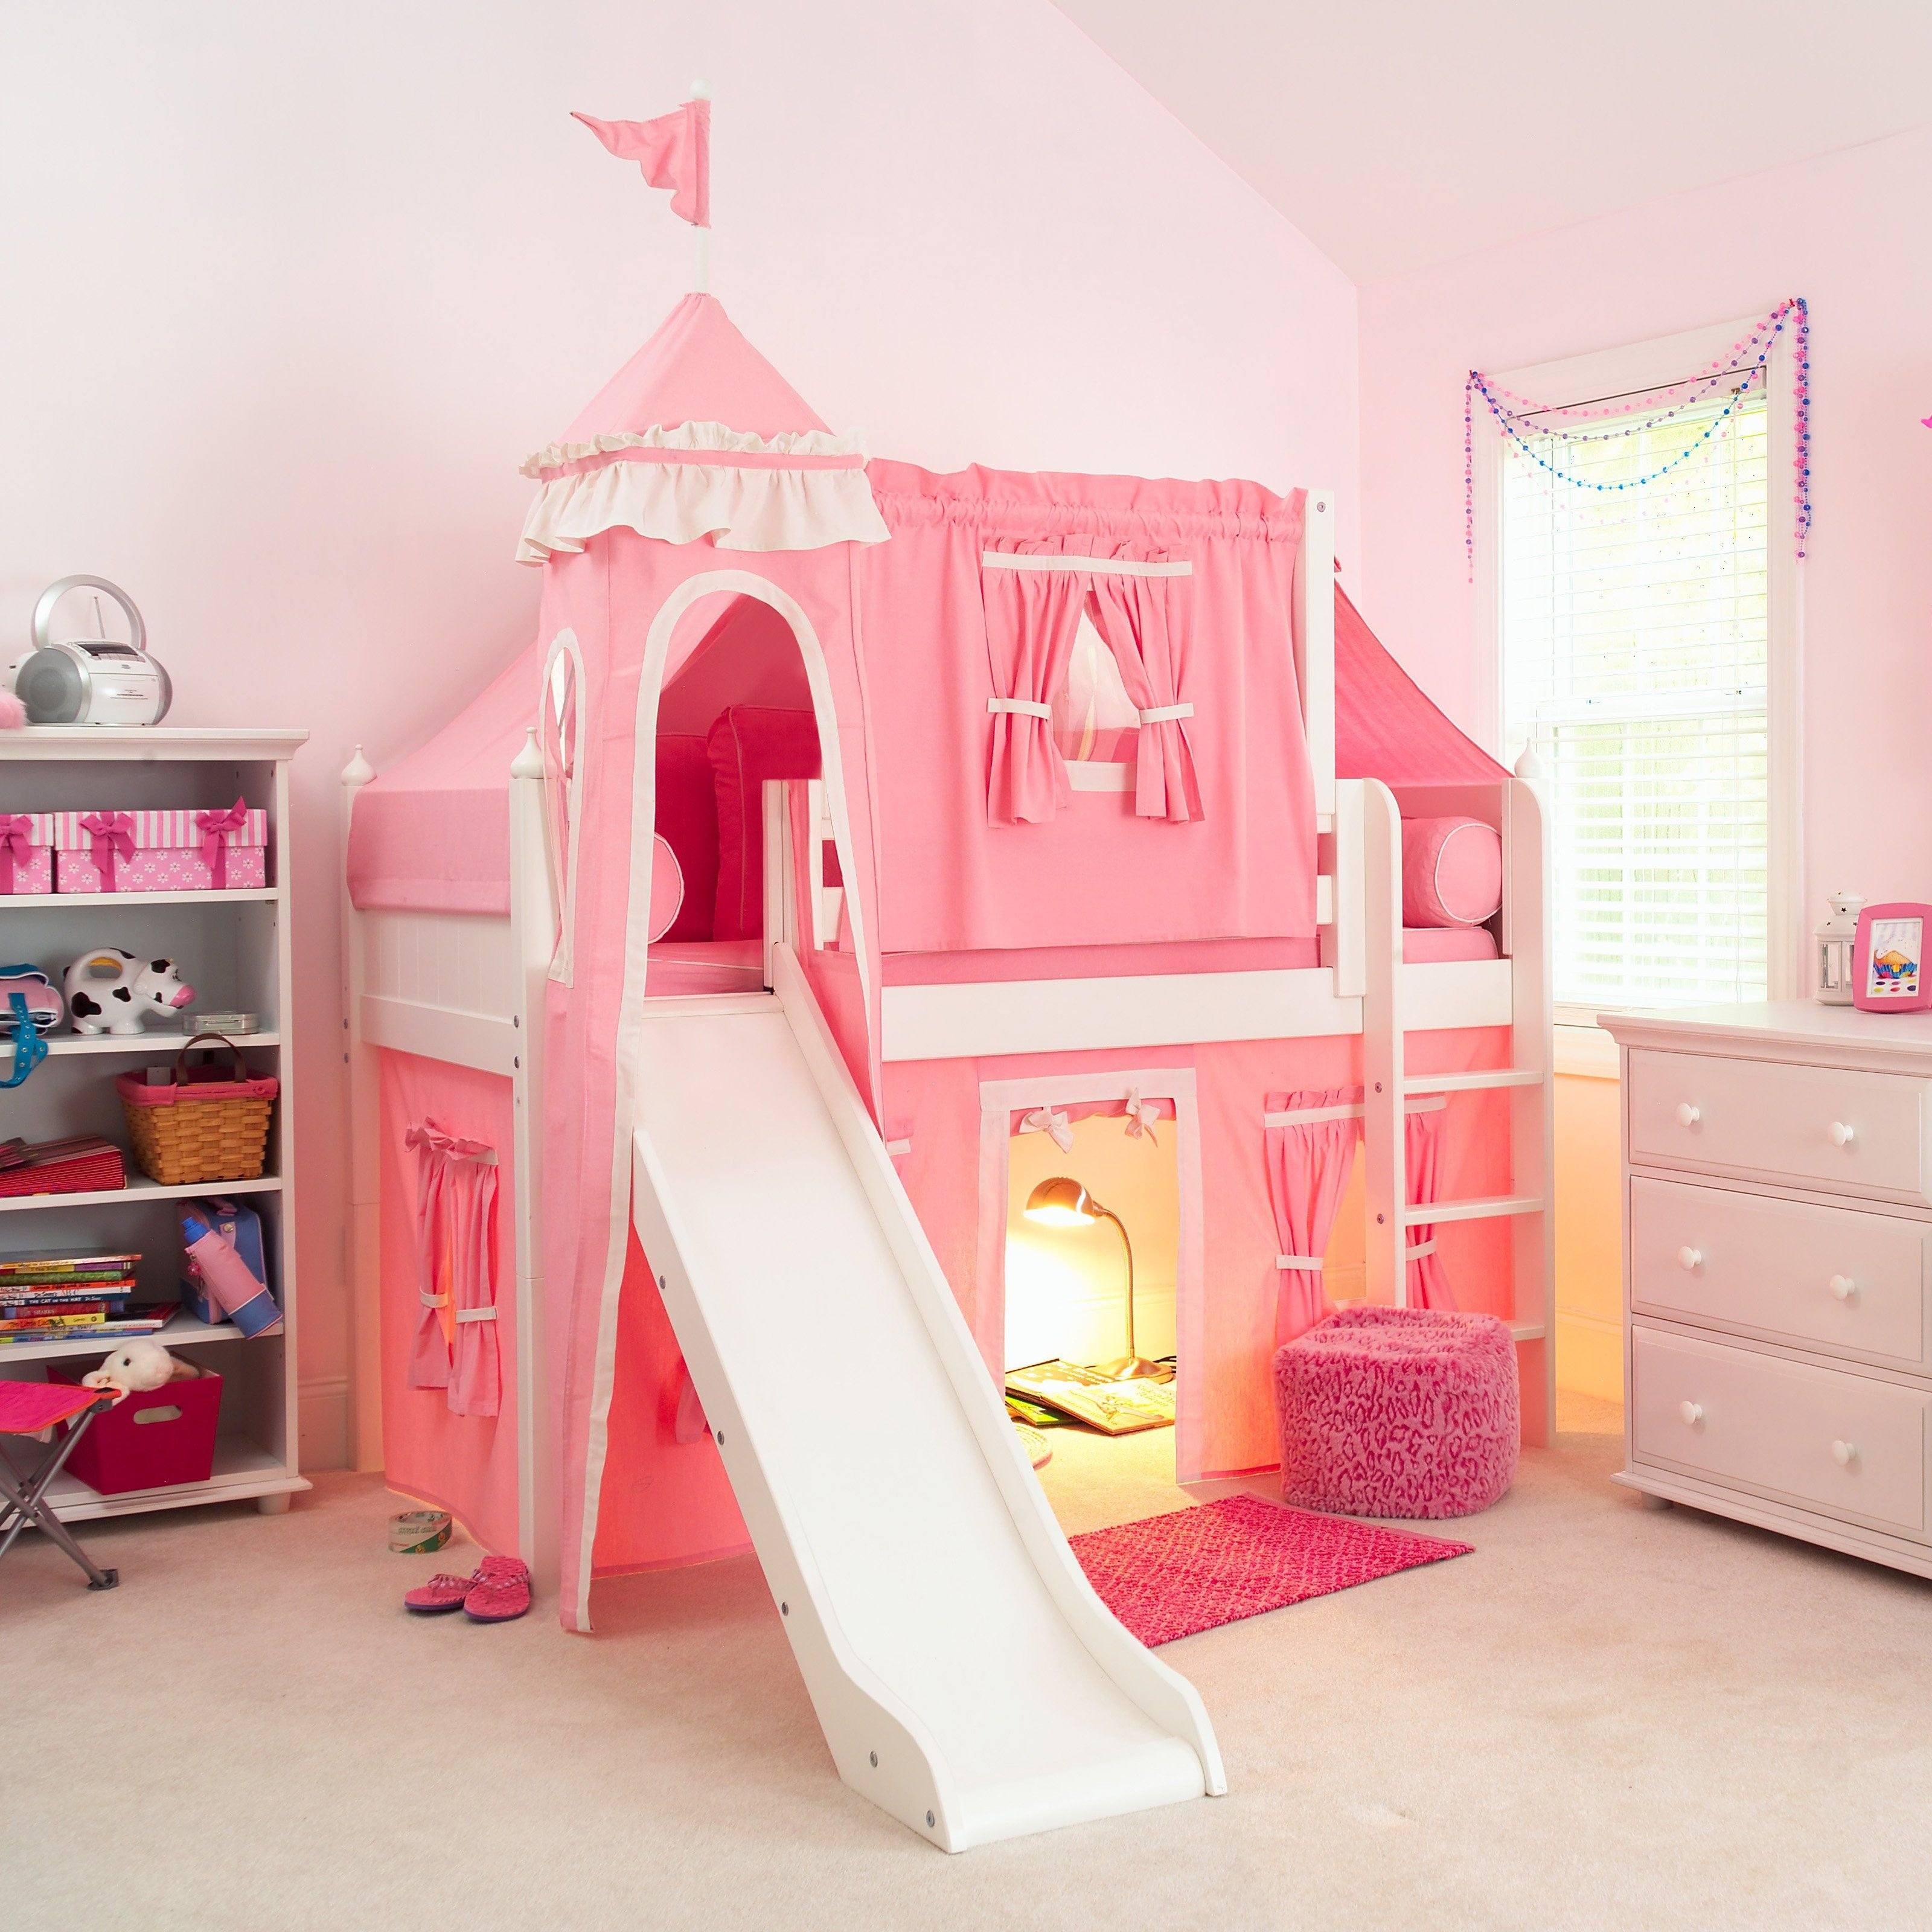 Детская принцесса. Детские комнаты для девочек. Кровать для девочки. Кровать в комнату для девочки. Шикарная комната для девочки.